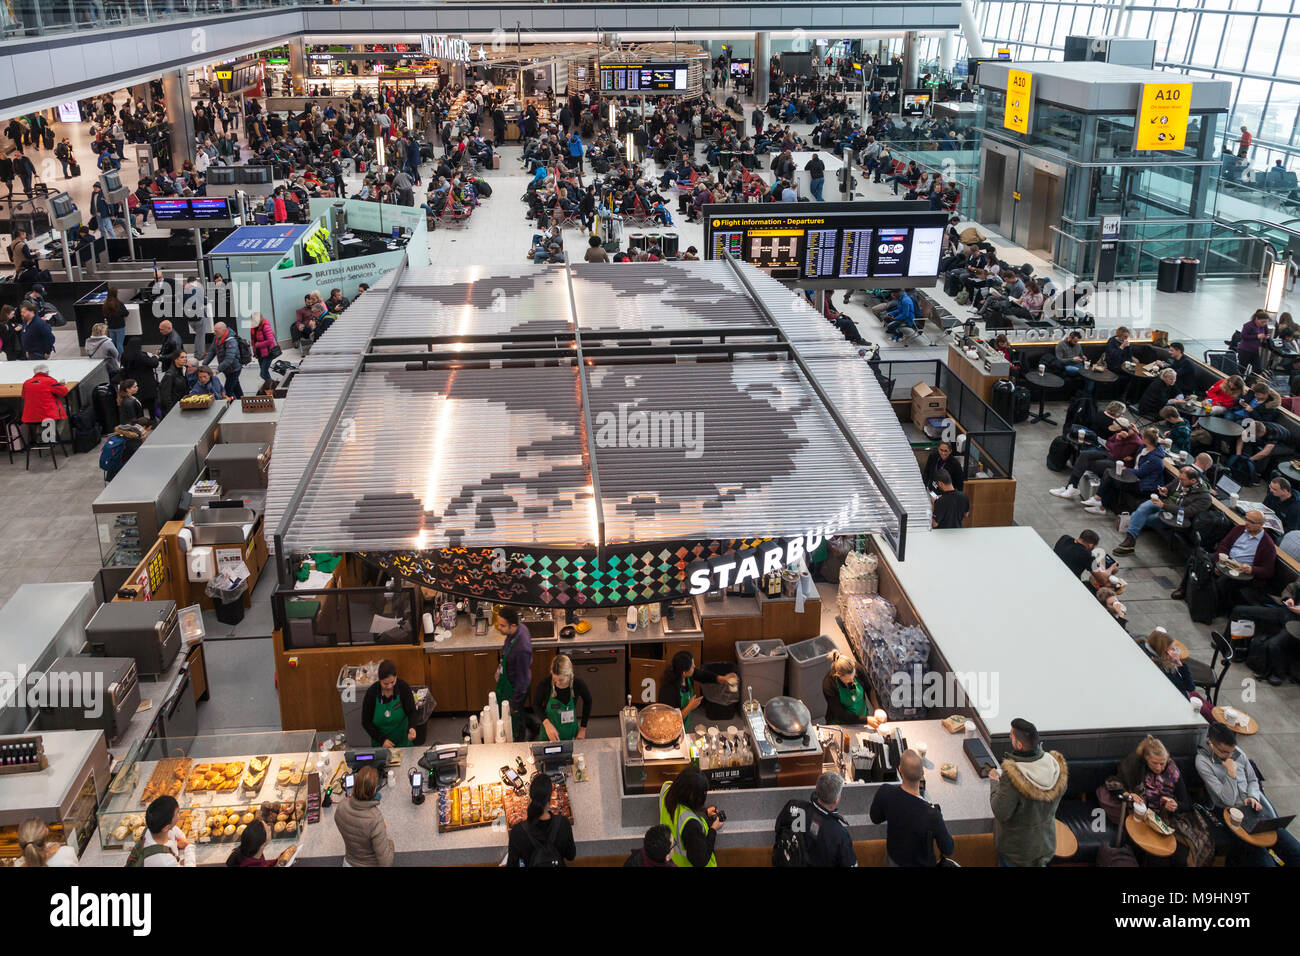 Heathrow Airport Terminal 5 Abflug Lounge und Halle. Große Weltkarte auf  dem Dach von Starbucks an. Besetzt mit Passagieren auf ein Tag von vielen  fli Stockfotografie - Alamy